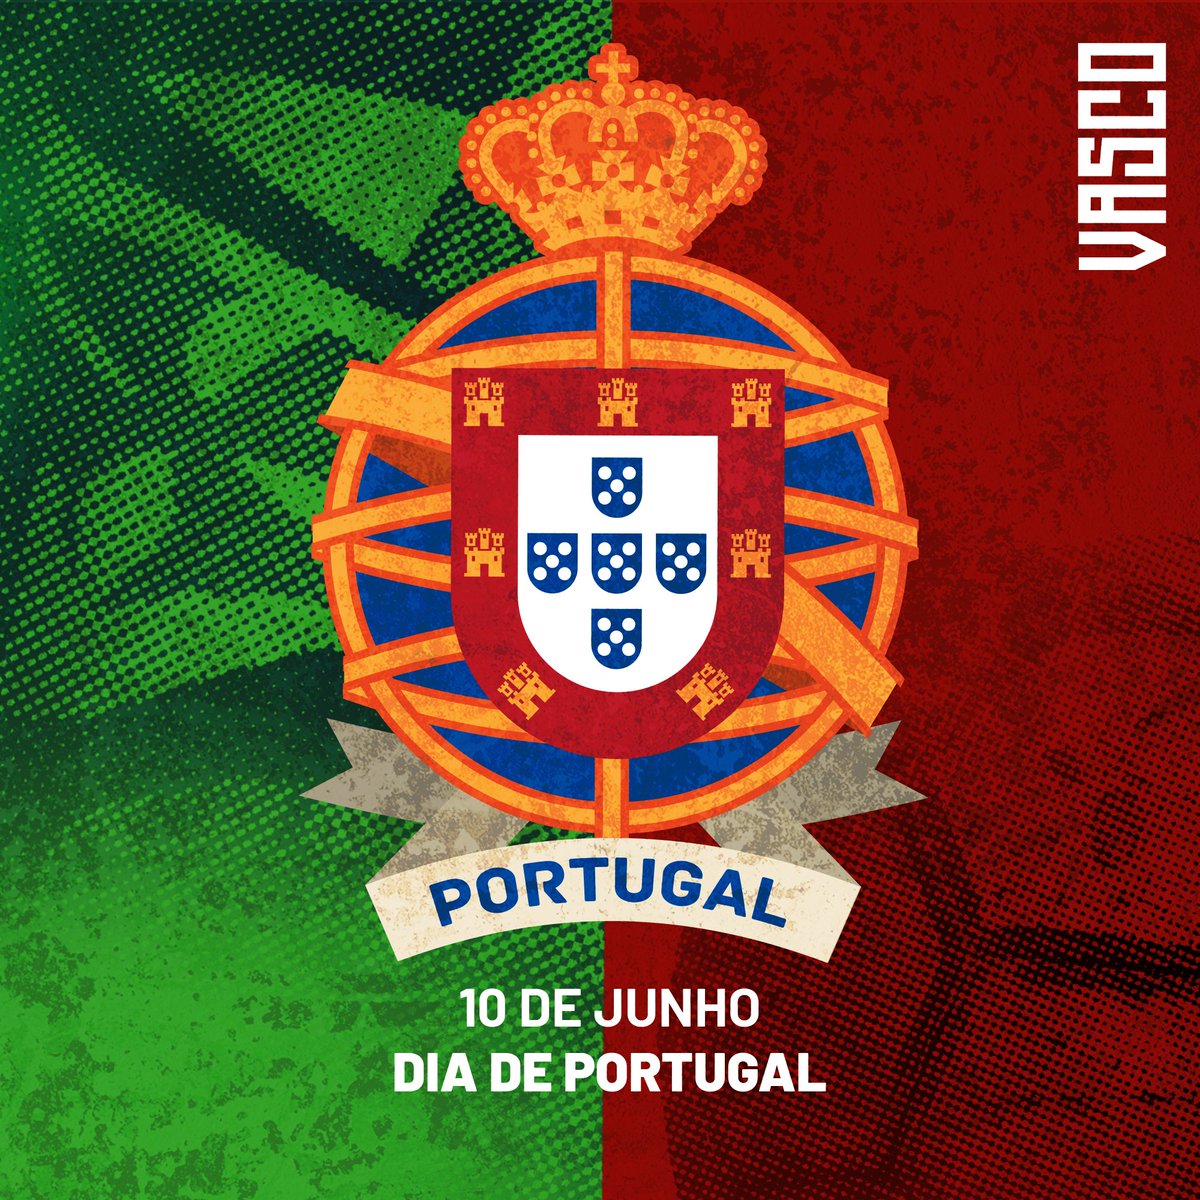 10 de Junho - Dia de Portugal

'No atletismo, és um braço
No remo, és imortal
No futebol, és um traço
De união Brasil-Portugal...' 🎶

#DiadePortugal